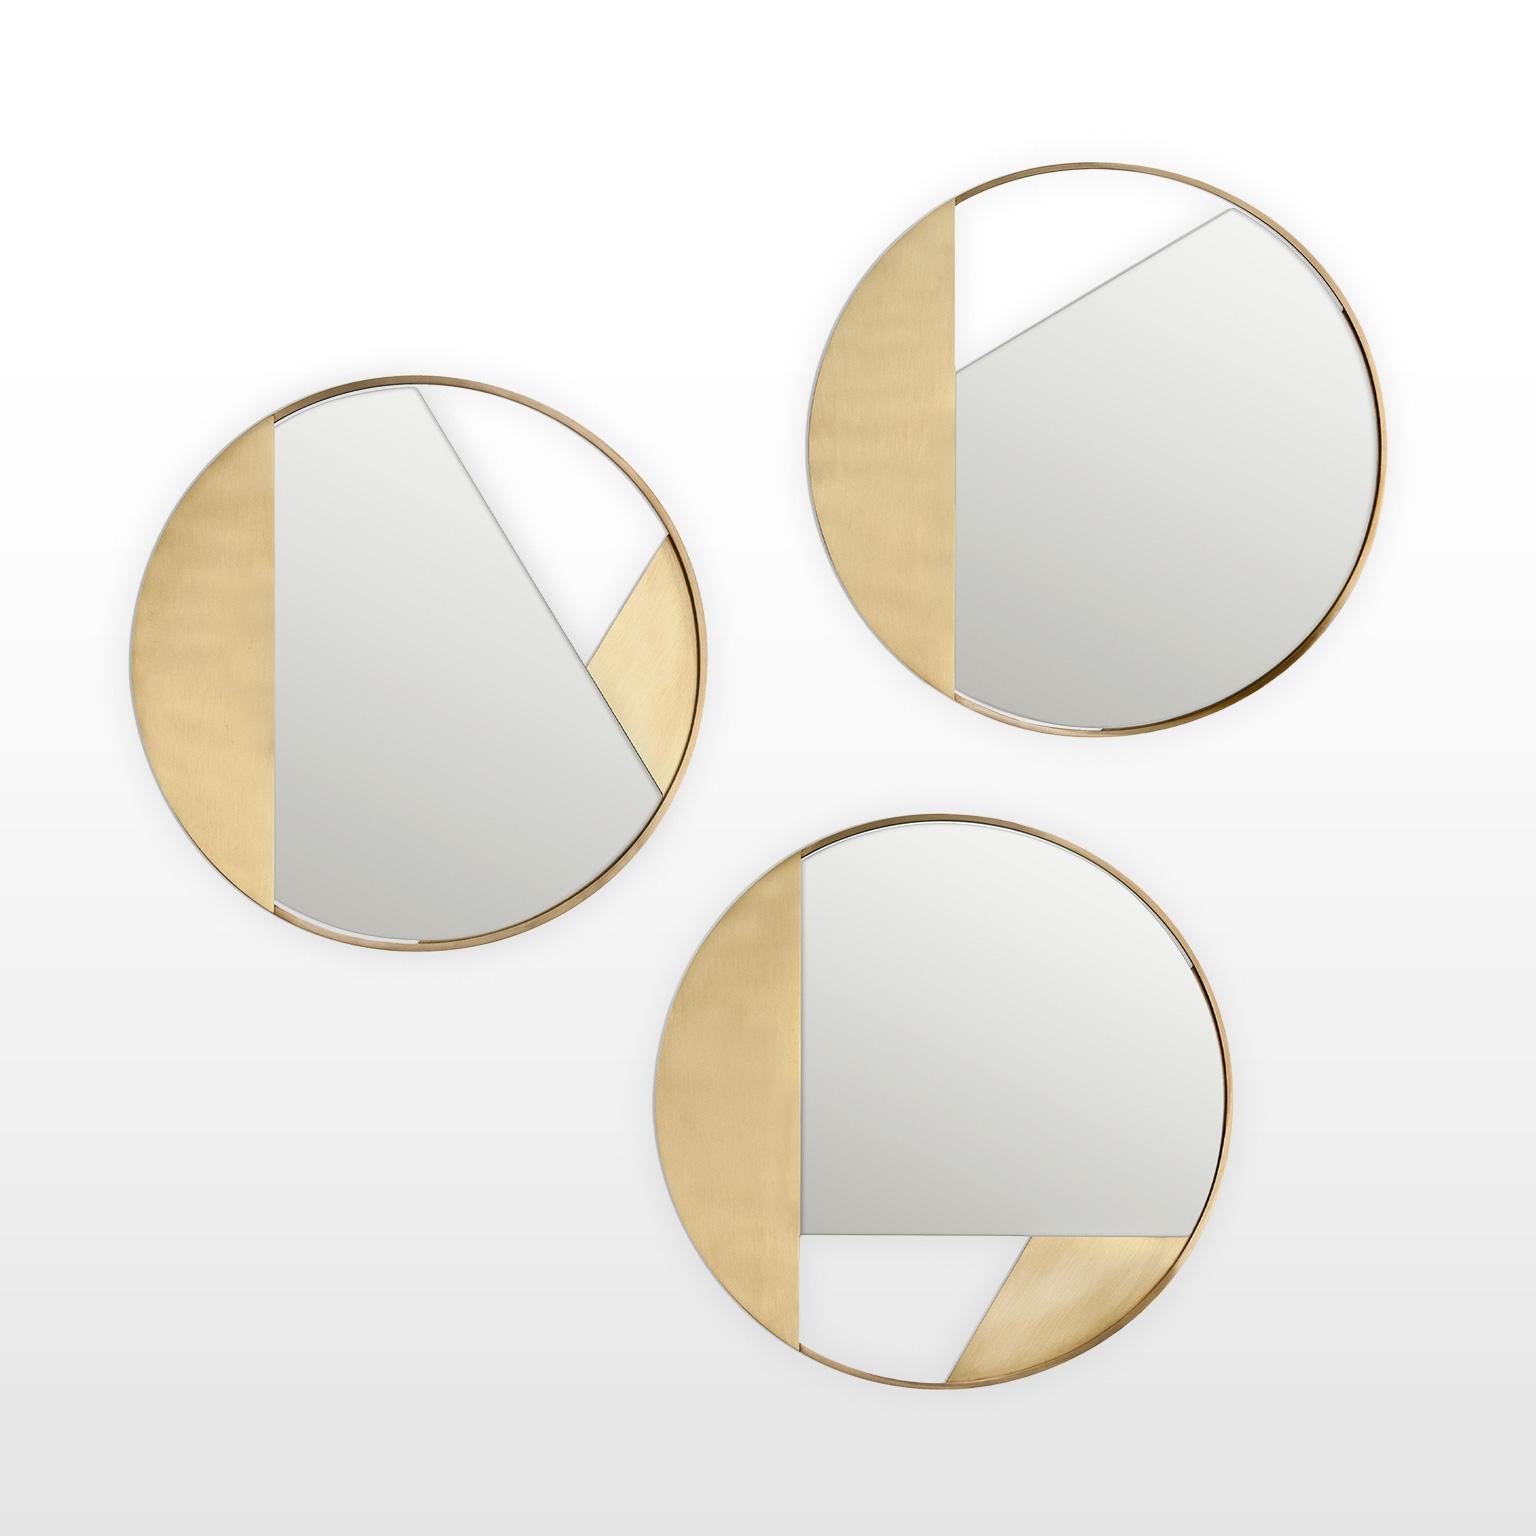 Contemporary Limited Edition Brass Mirror, Revolution 90 V2 by Edizione Limitata For Sale 5